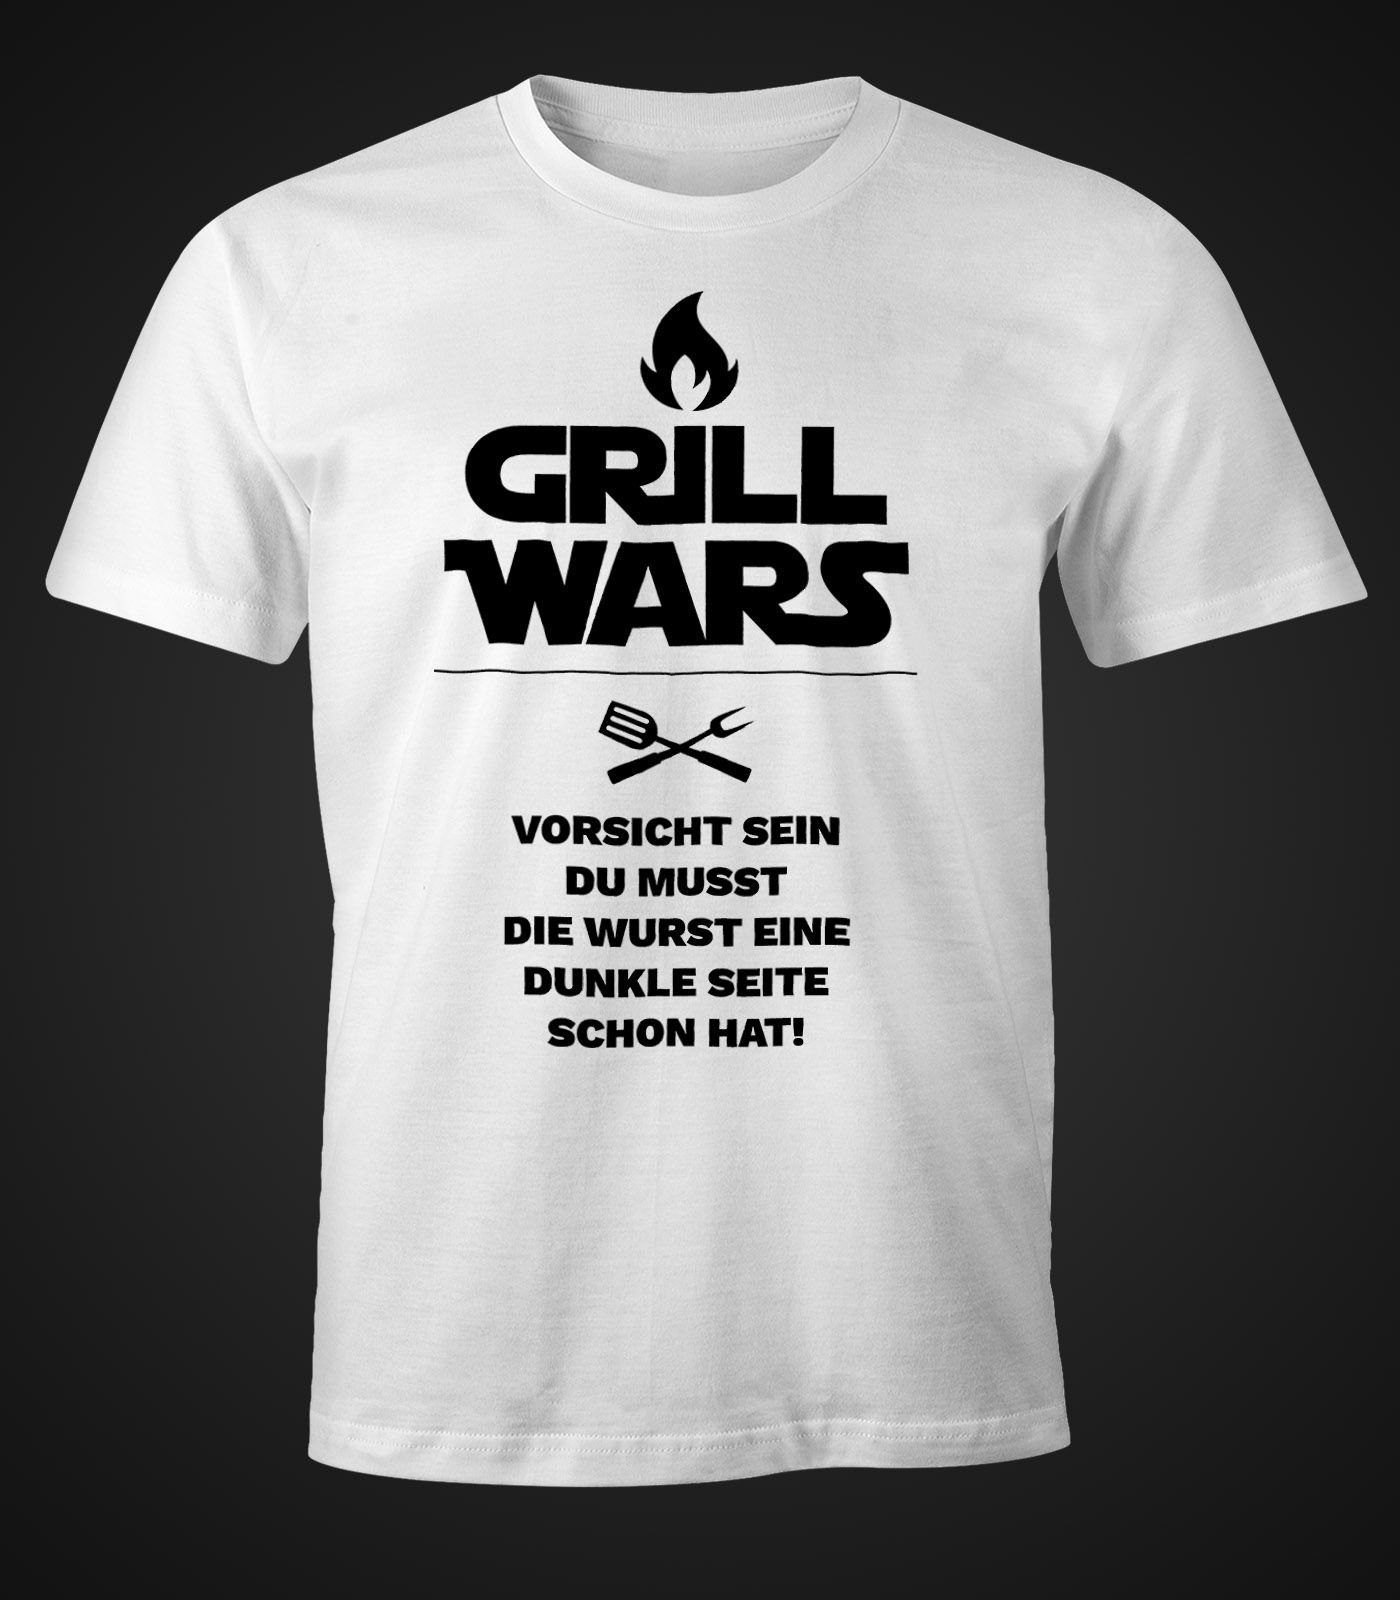 MoonWorks Print-Shirt Herren mit mit Fun-Shirt Moonworks® weiß T-Shirt Spruch Wars Print Grill